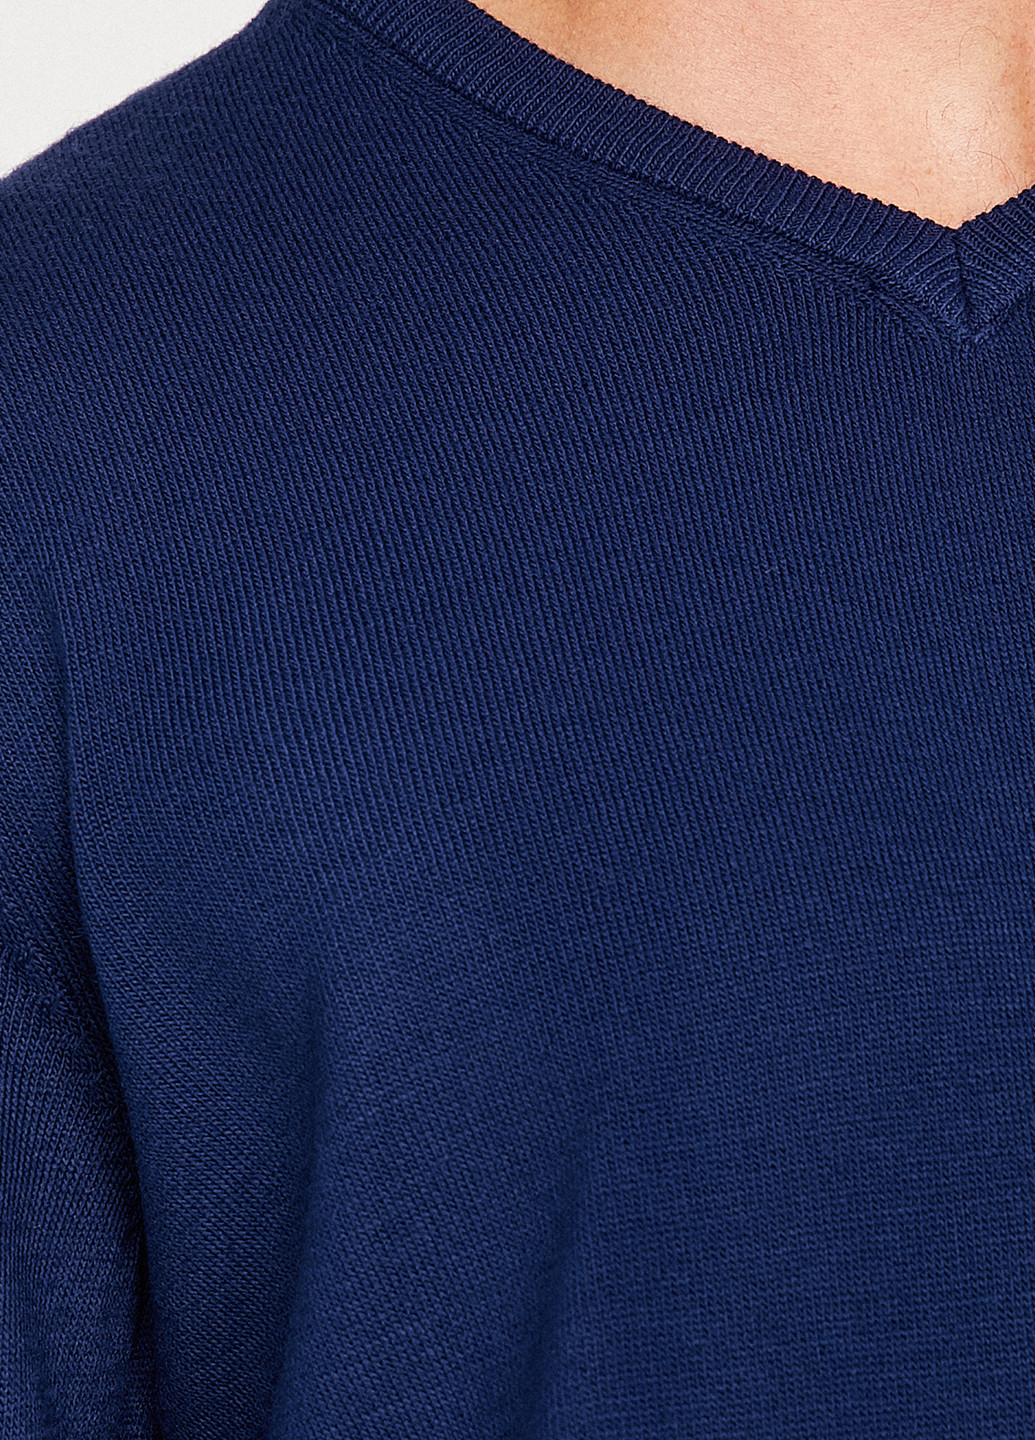 Синій зимовий пуловер пуловер KOTON